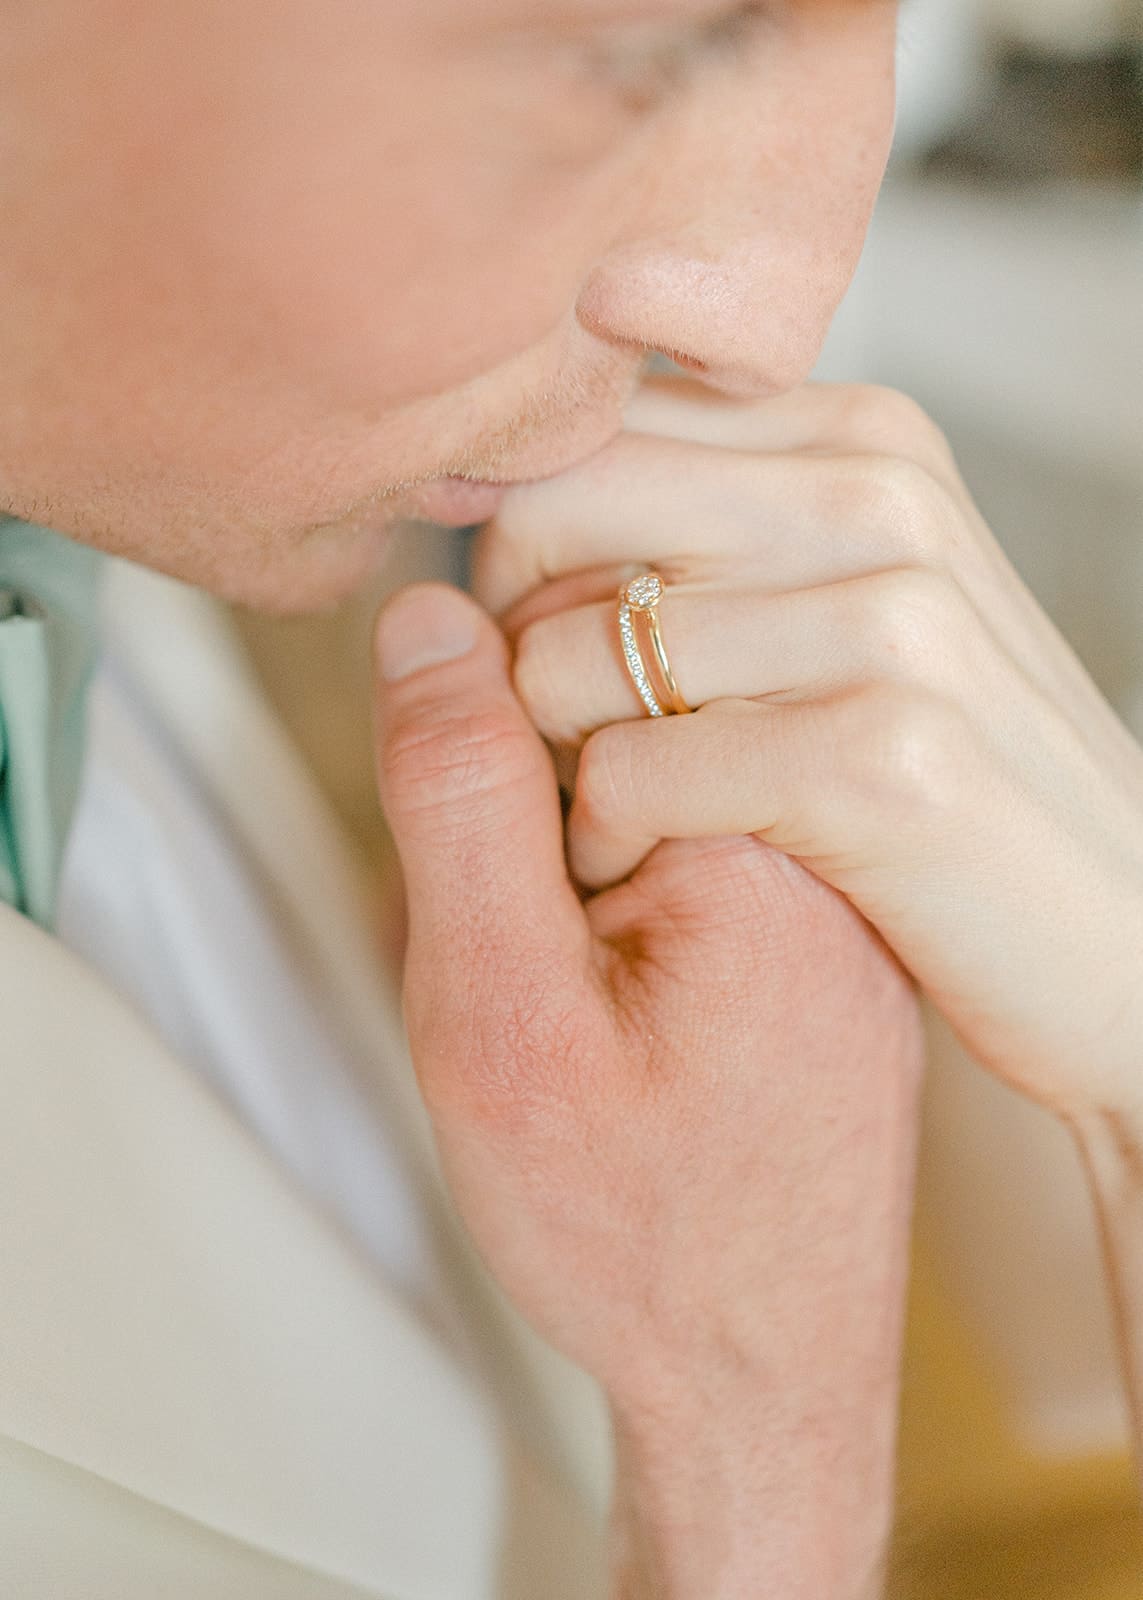 Braeutigam küsst Hand der Braut Fokus auf Ehering und Verlobungsring der Braut